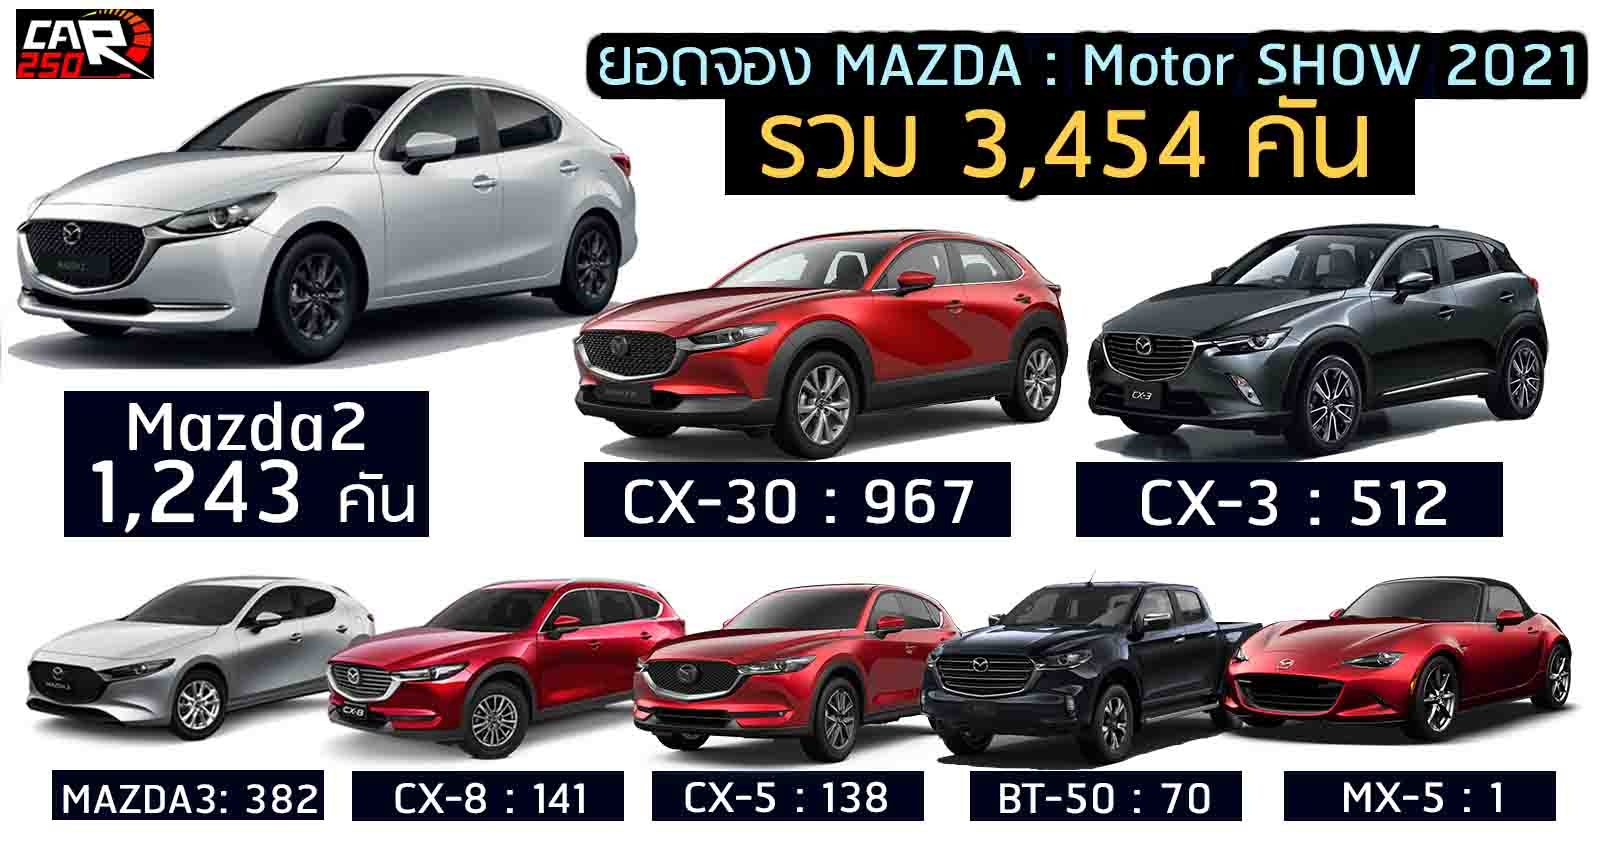 ยอดจอง MAZDA ในงาน Motor Show 2021 รวม 3,454 คัน MAZDA2 ขายดีสุด